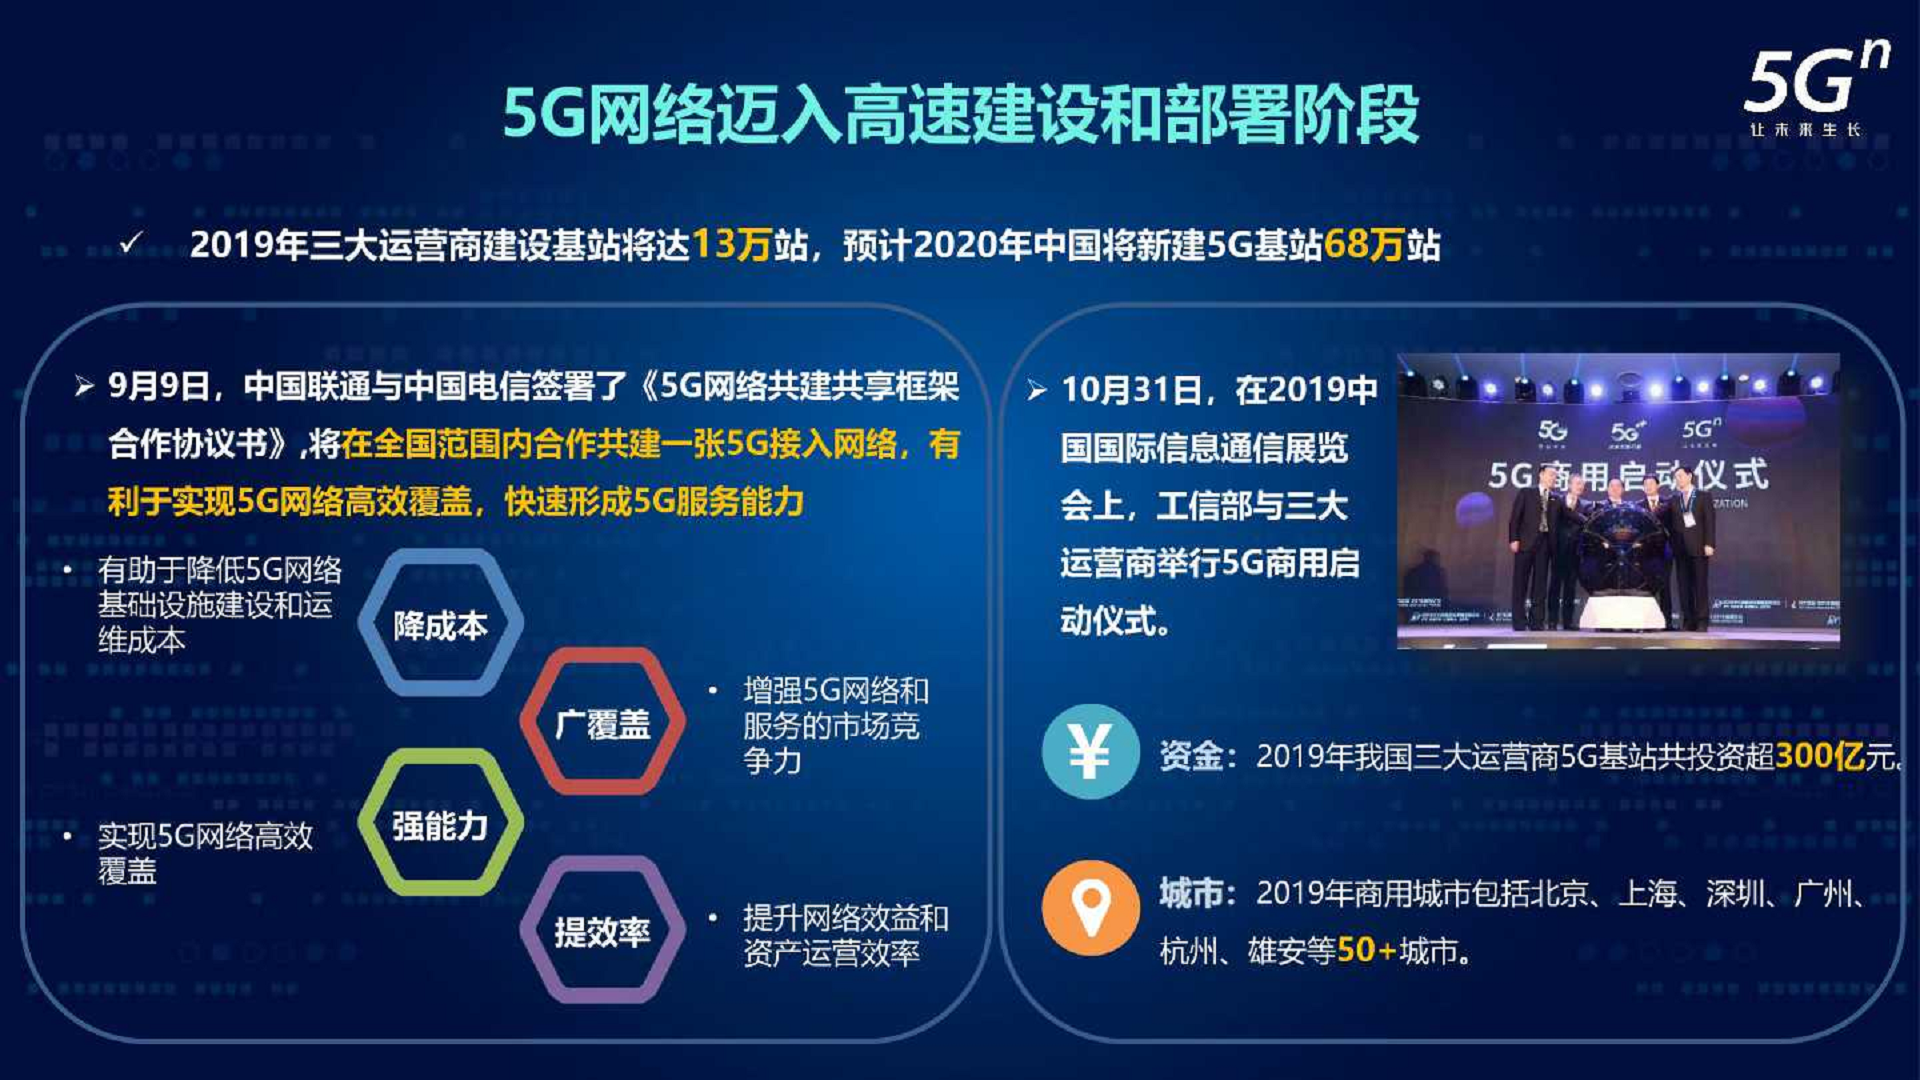 沈阳 5G 网络物流园：科技与物流融合的典范，引领未来物流潮流  第2张